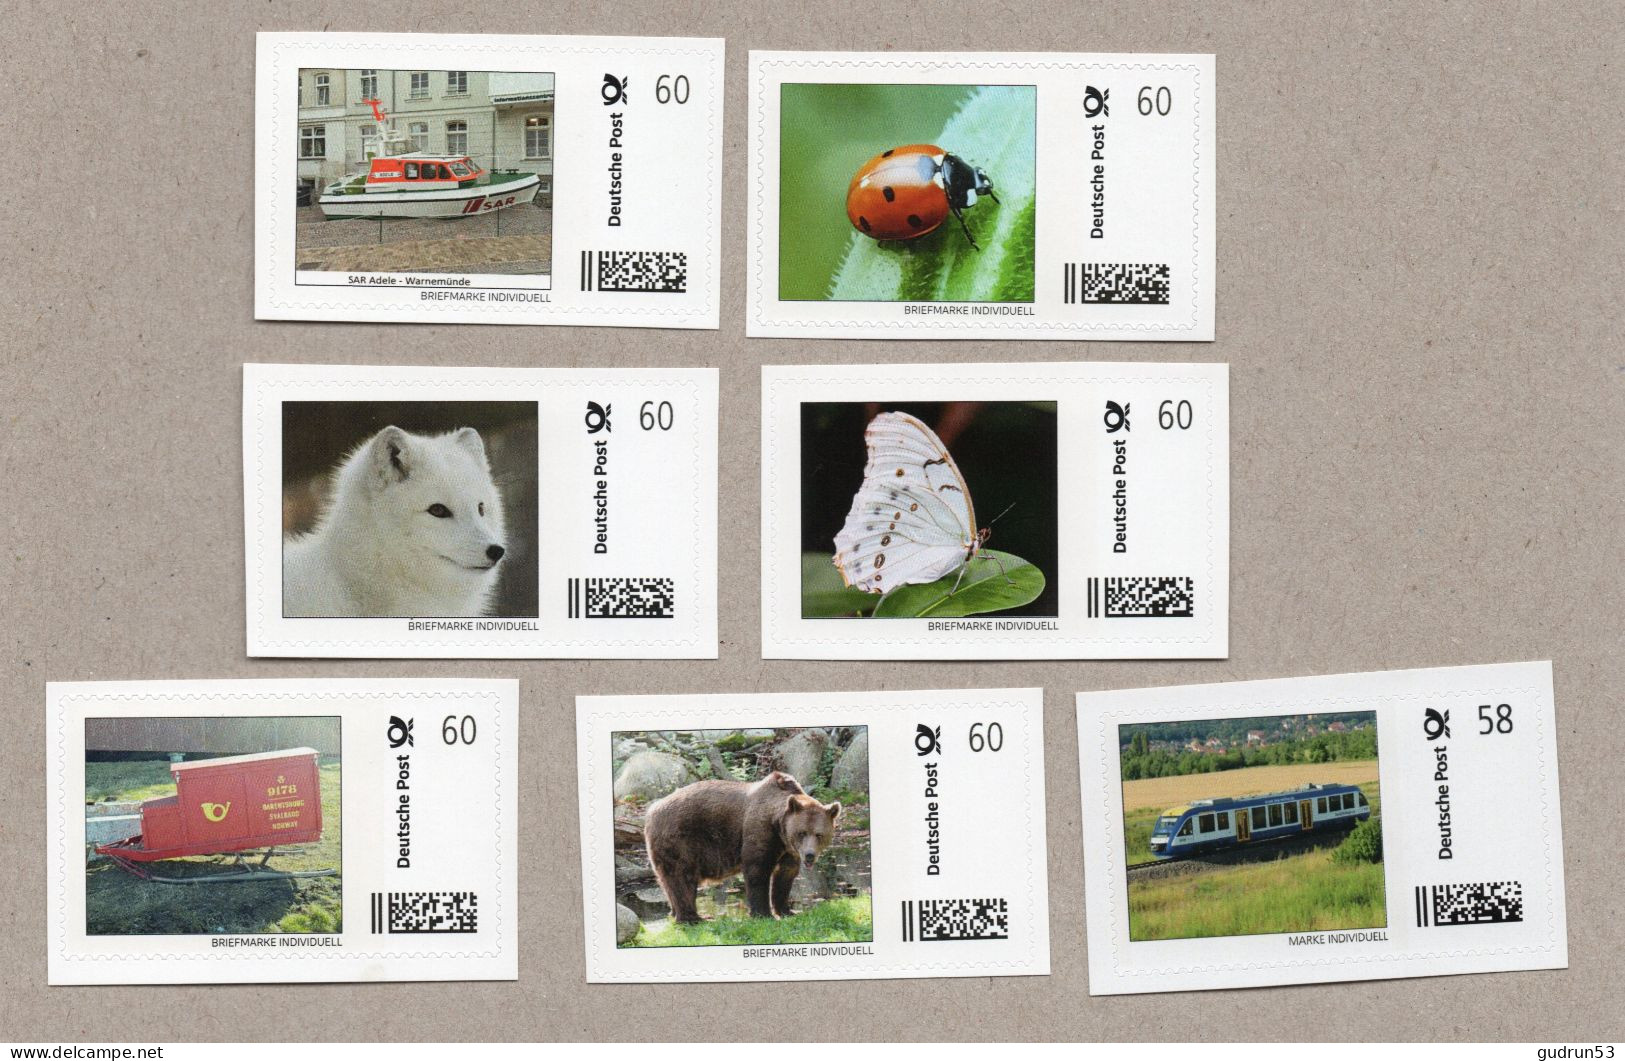 003] BRD - Privatpost -  Briefmarke Individuell - 7 Marken - Motive: Tiere Eisenbahn Post Schiff - Sellos Privados